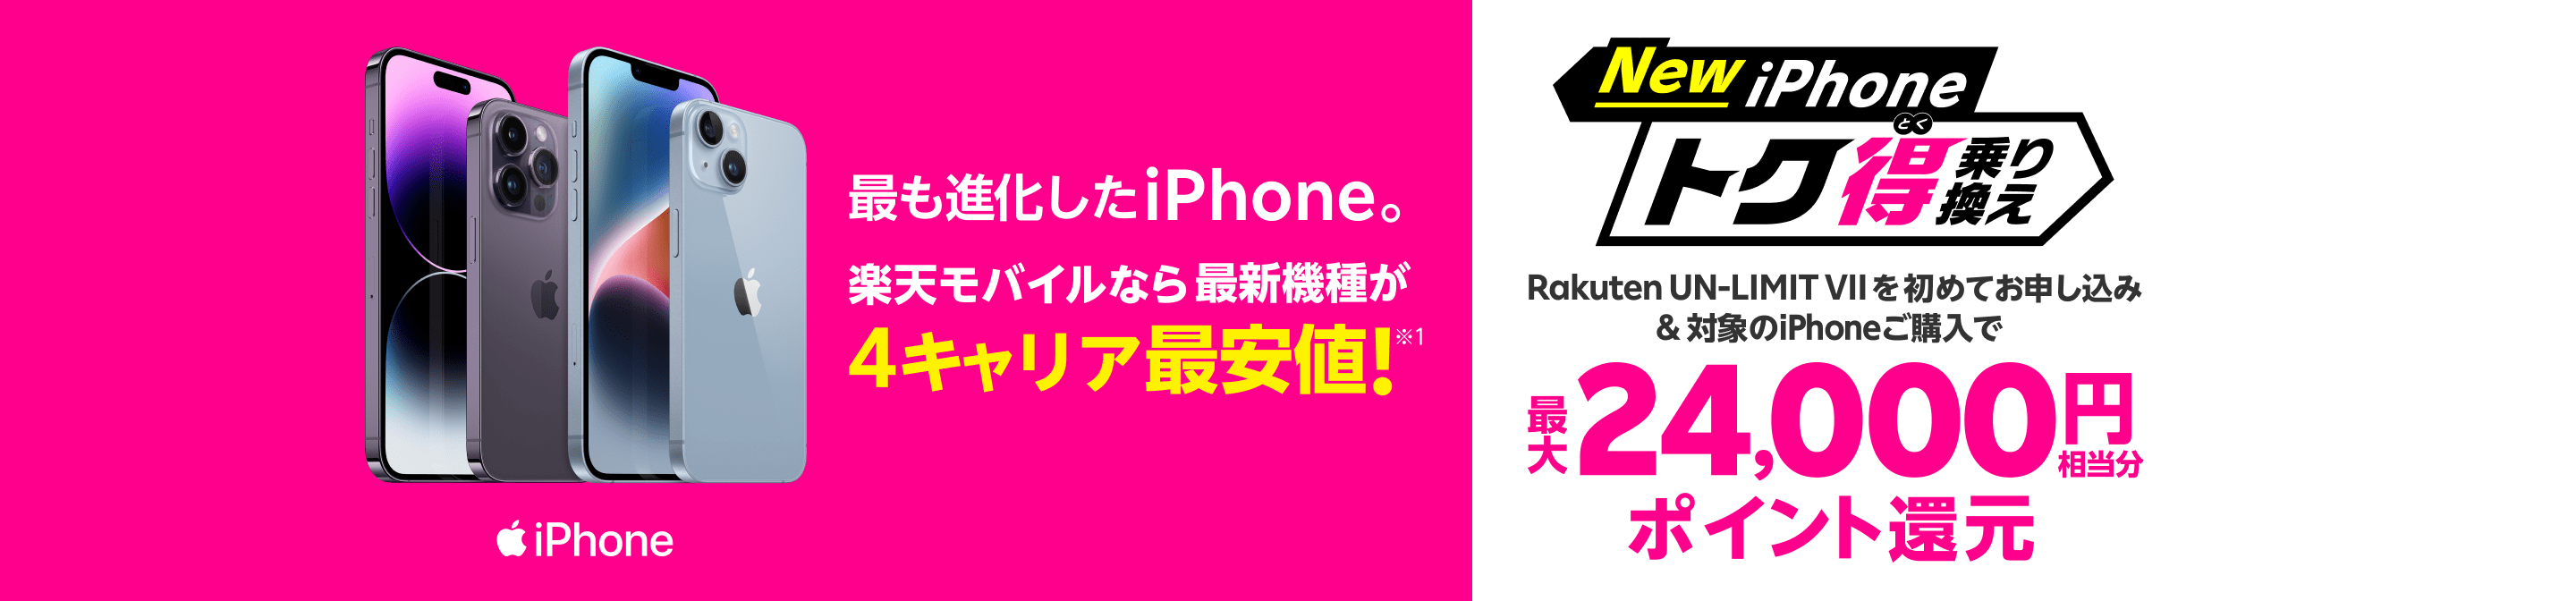 楽天モバイル iphone セール